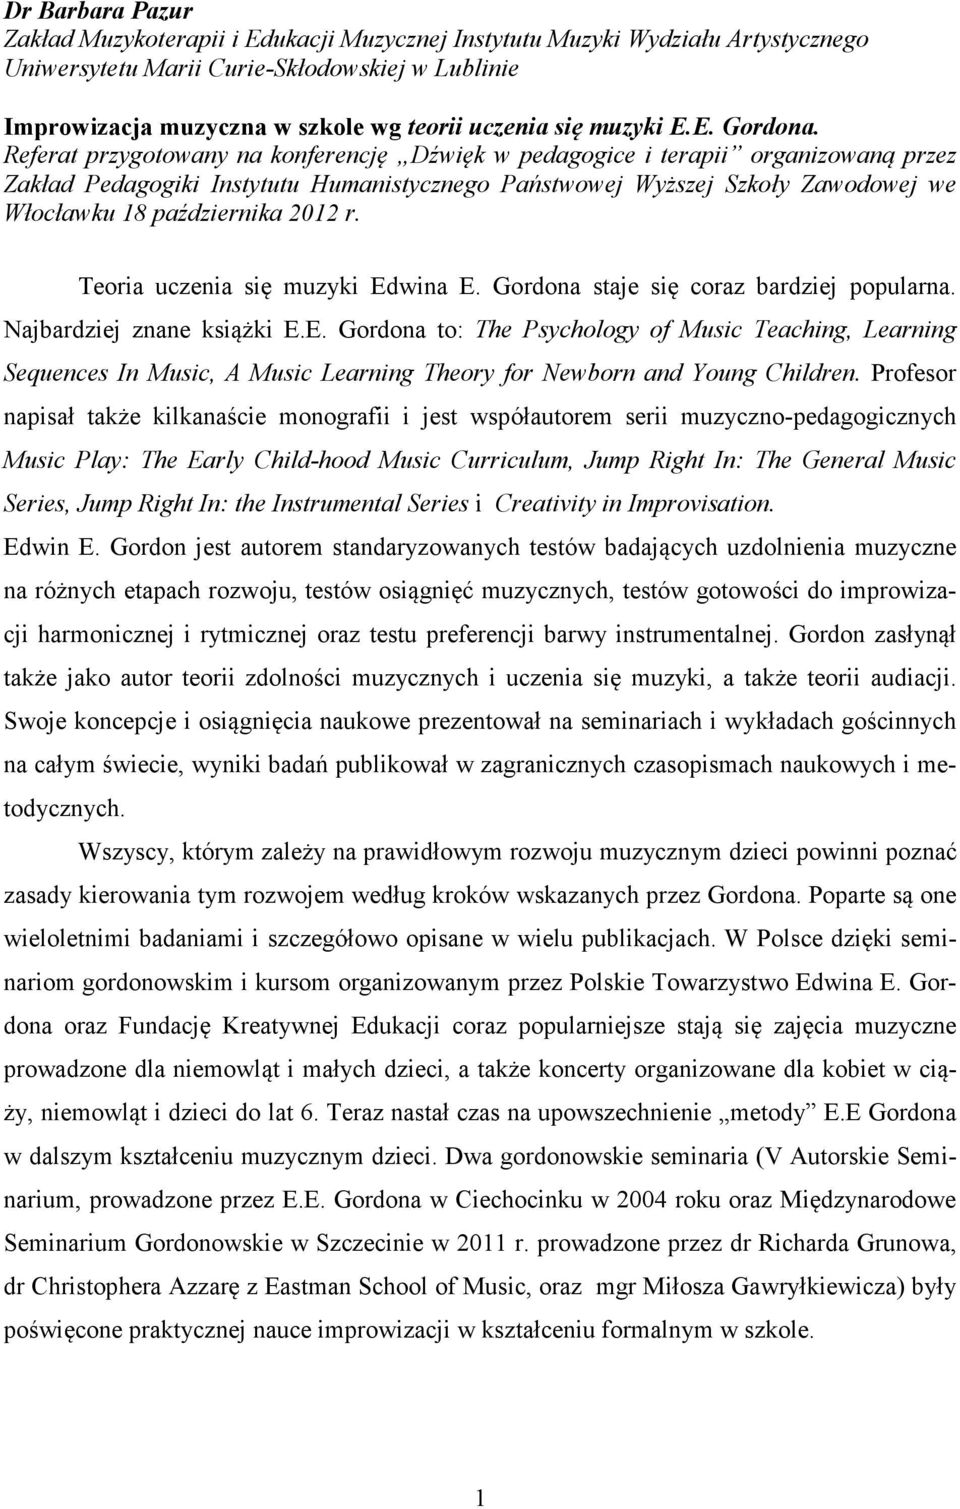 Referat przygotowany na konferencję Dźwięk w pedagogice i terapii organizowaną przez Zakład Pedagogiki Instytutu Humanistycznego Państwowej Wyższej Szkoły Zawodowej we Włocławku 18 października 2012